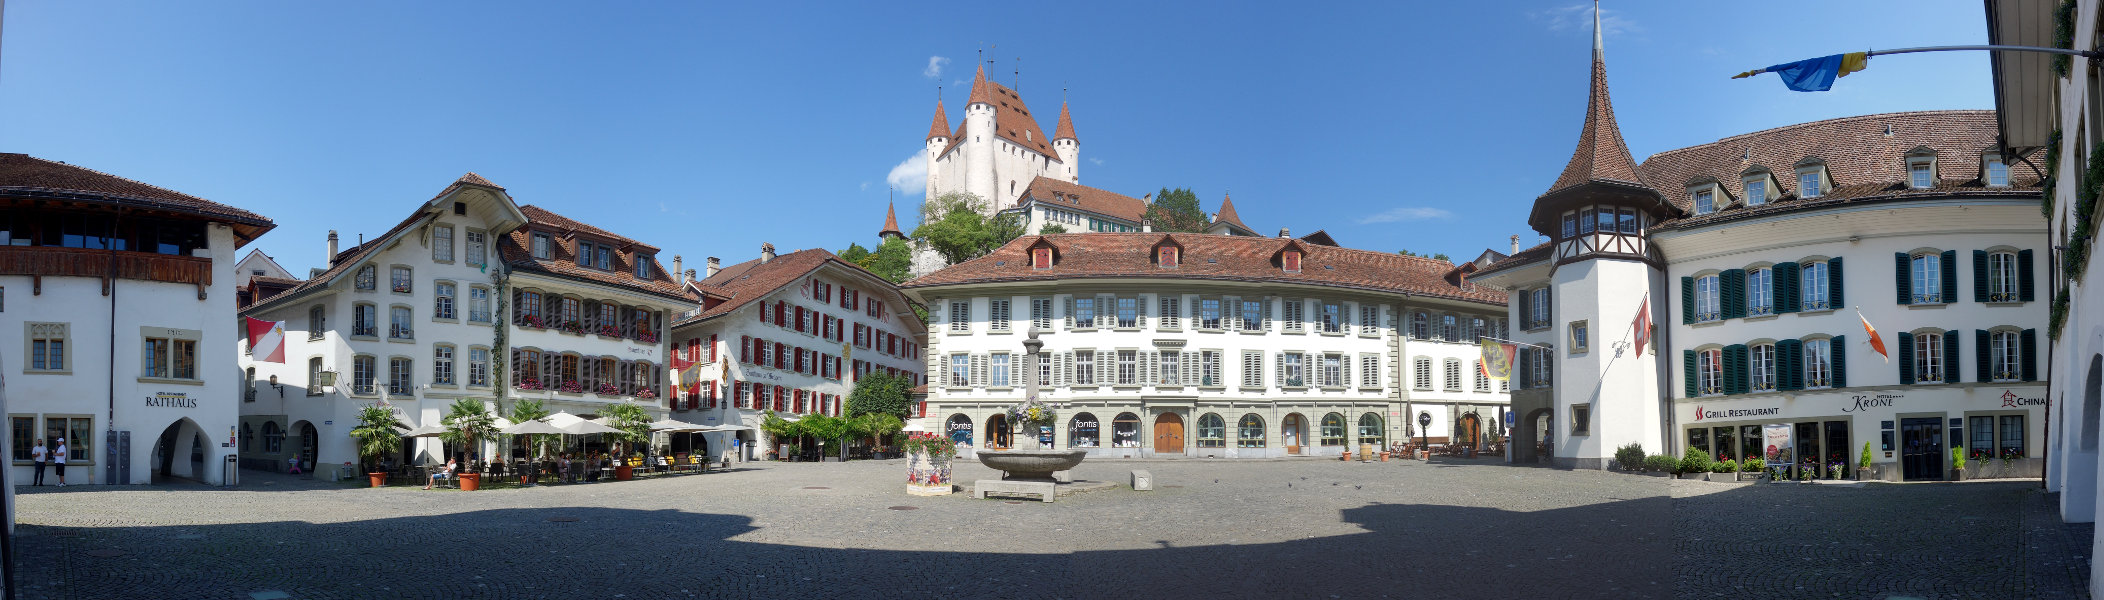 Rathausplatz Thun